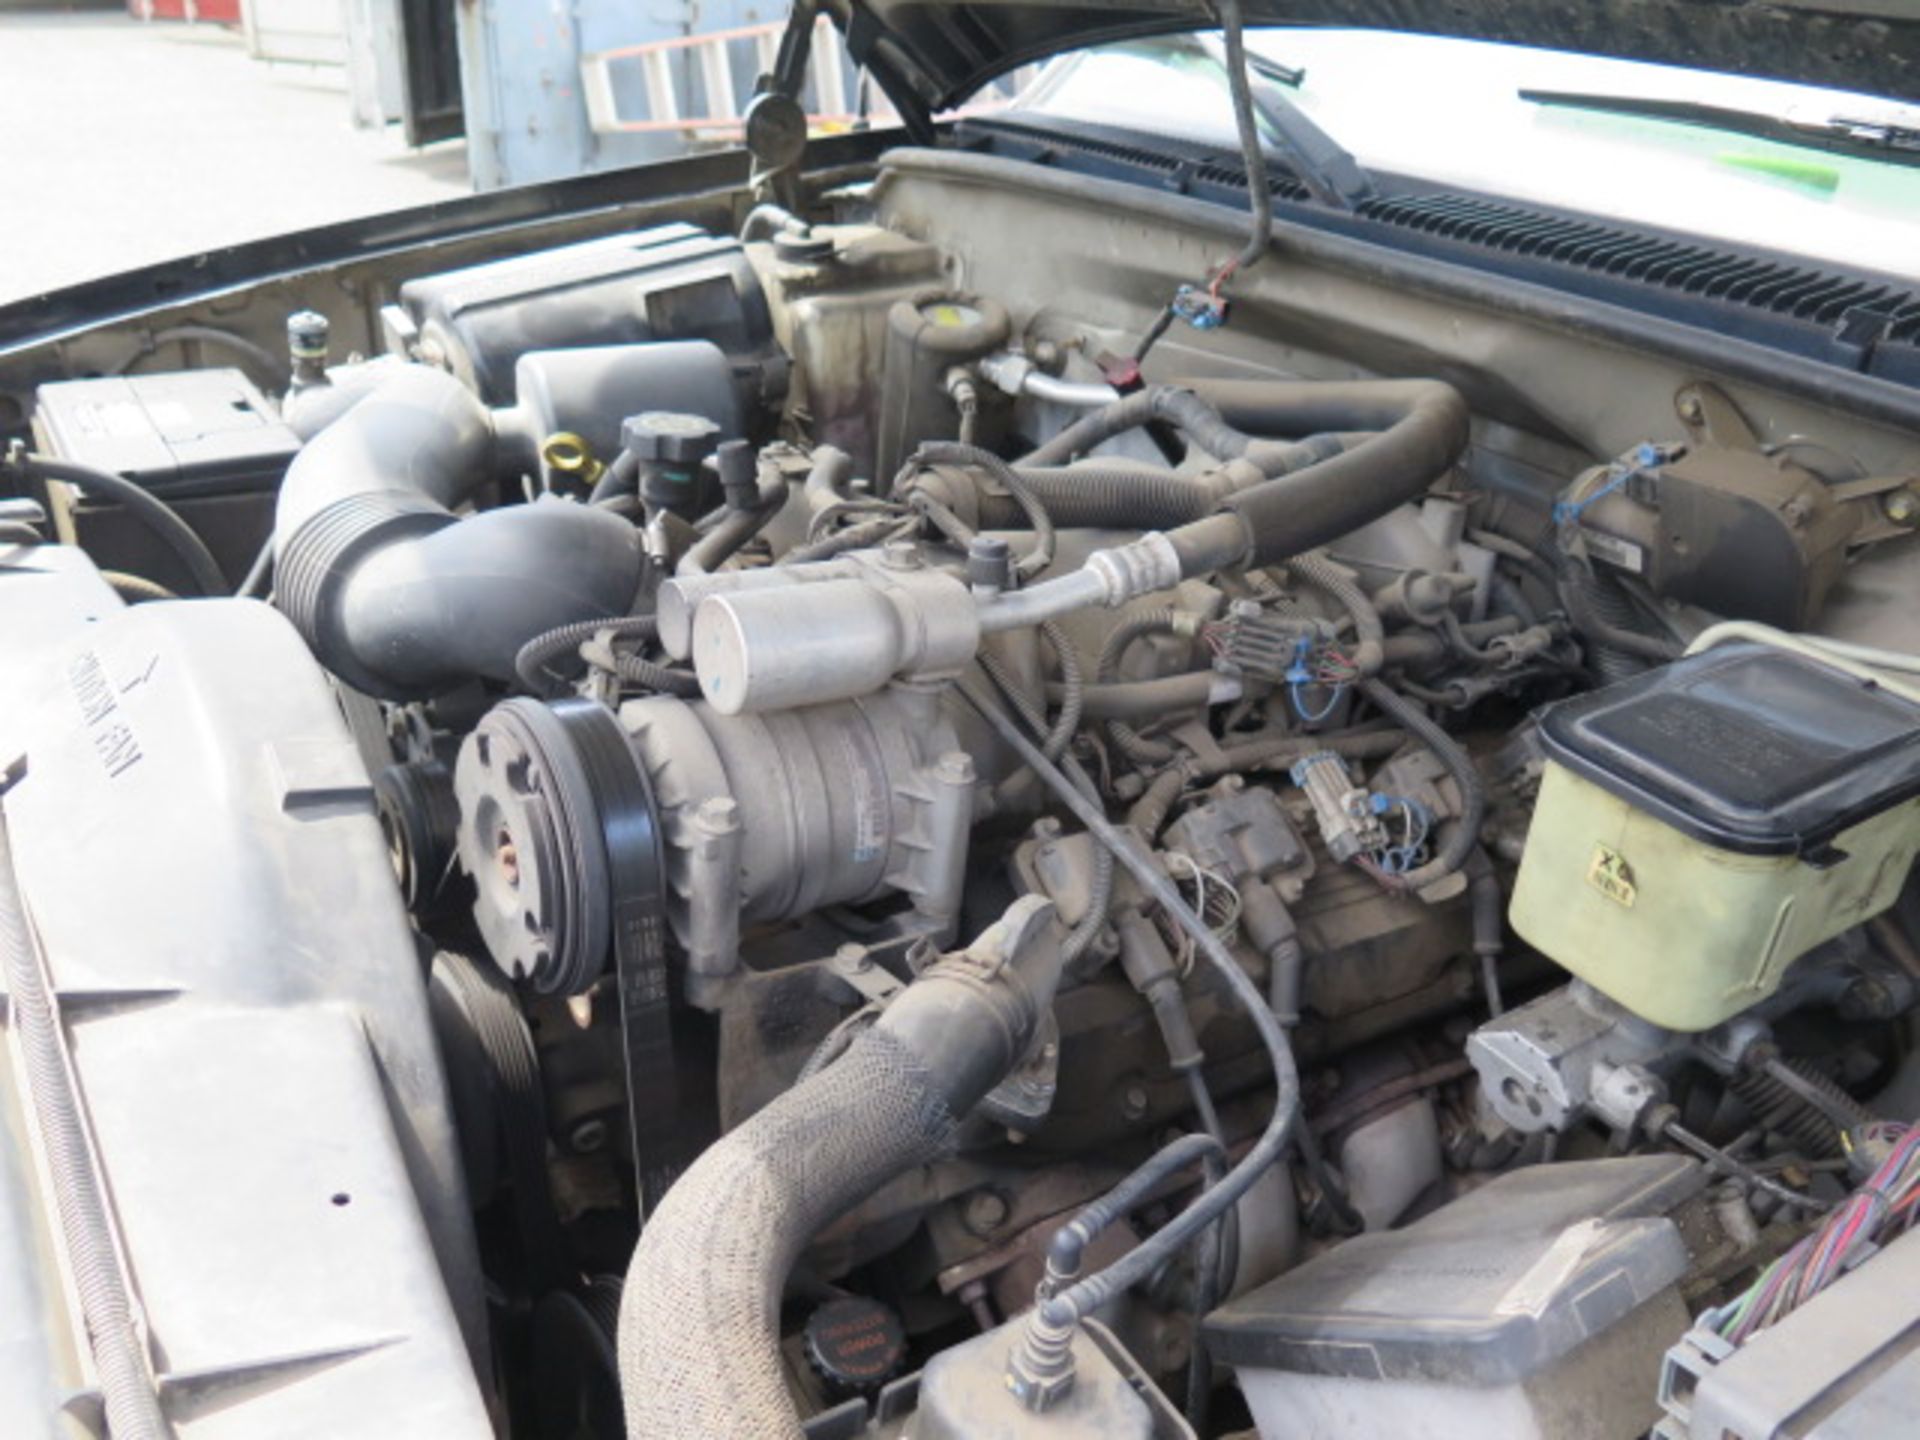 2001 Chevrolet Silverado 3500HD Welding Utility Truck Lisc# 6U26651 w/ 8.1L V8 Gas Engine, Automatic - Image 16 of 19